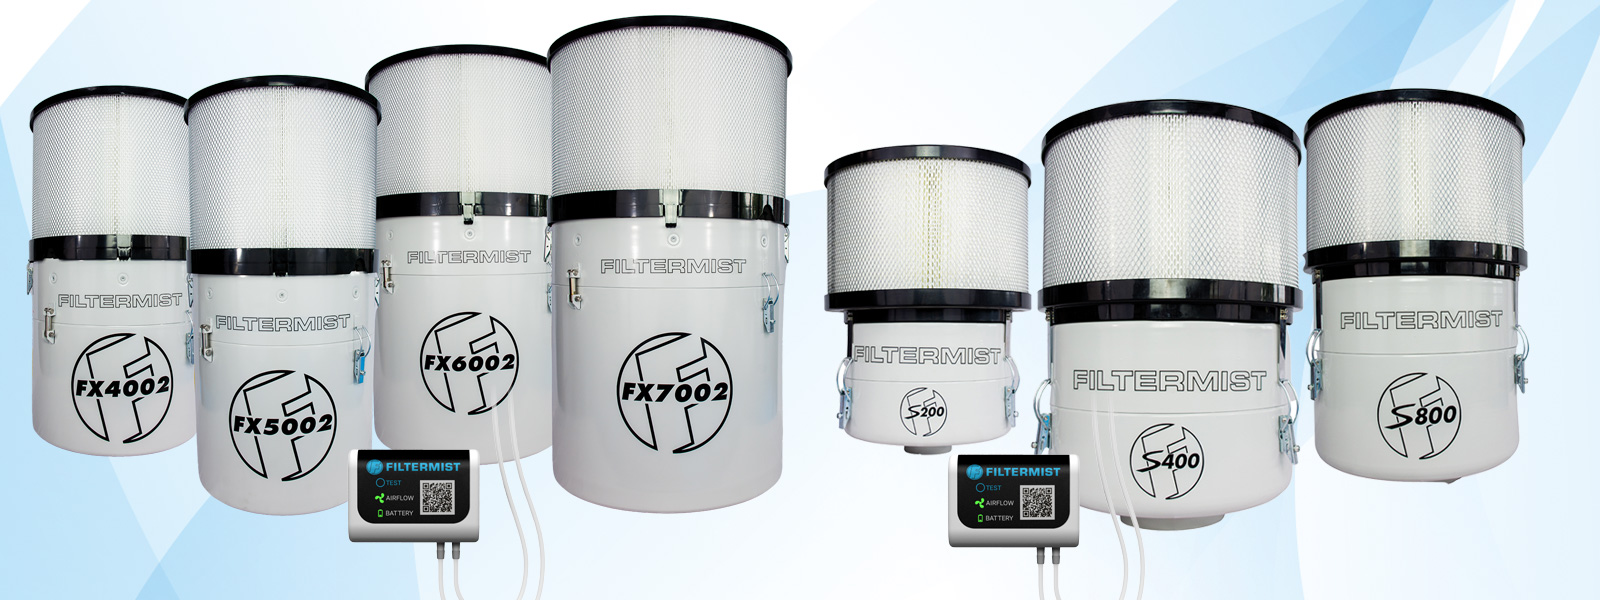 Serie completa delle unità filtranti per nebbie oleose Filtermist con f-monitor essential